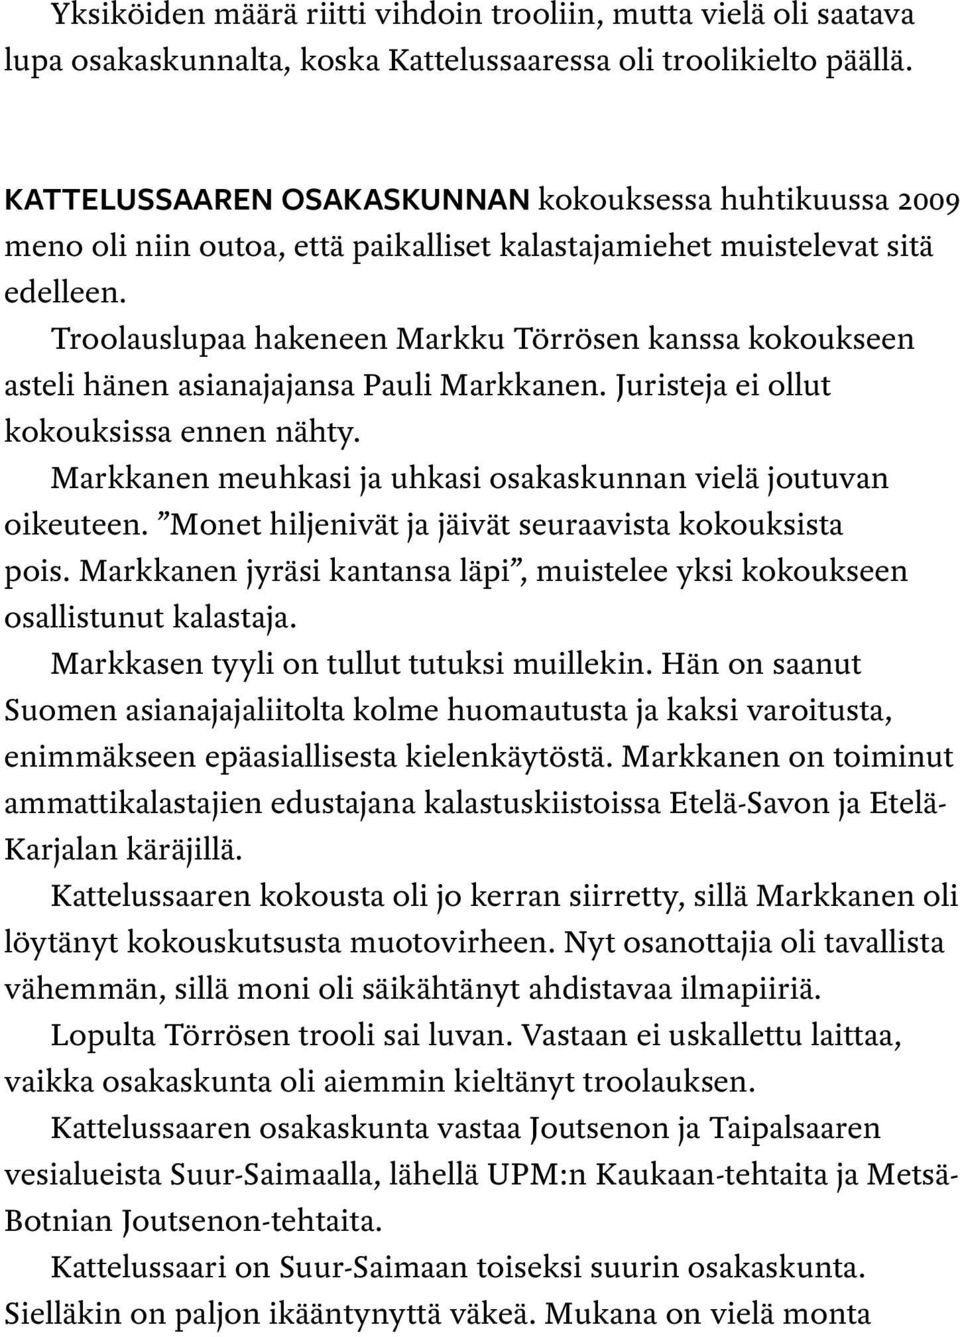 Troolauslupaa hakeneen Markku Törrösen kanssa kokoukseen asteli hänen asianajajansa Pauli Markkanen. Juristeja ei ollut kokouksissa ennen nähty.